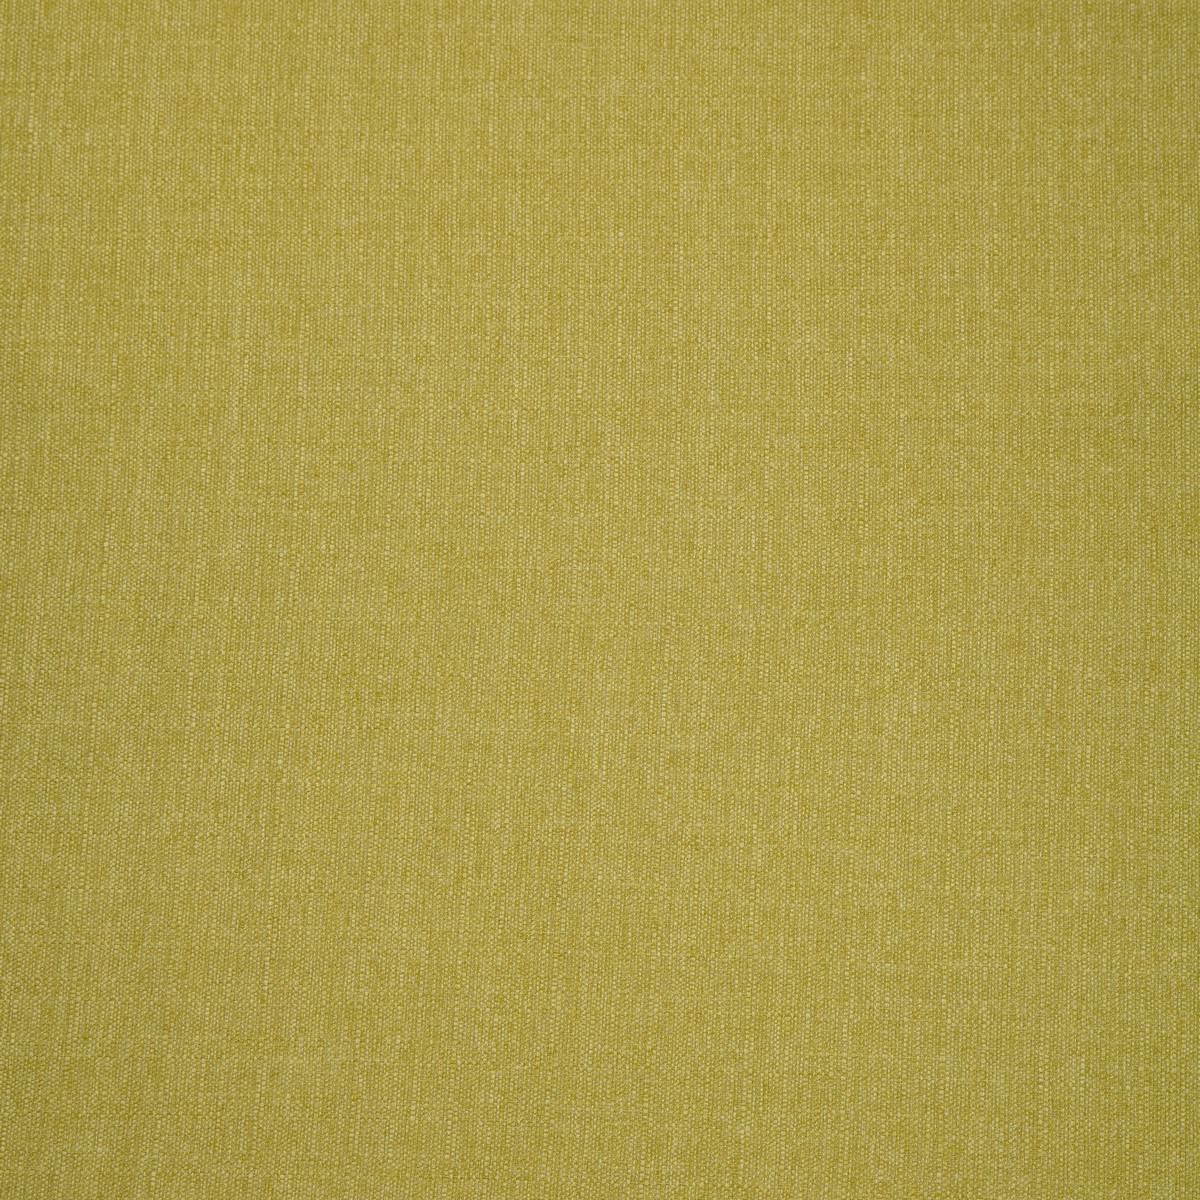 Shetland Chartreuse Fabric by iLiv